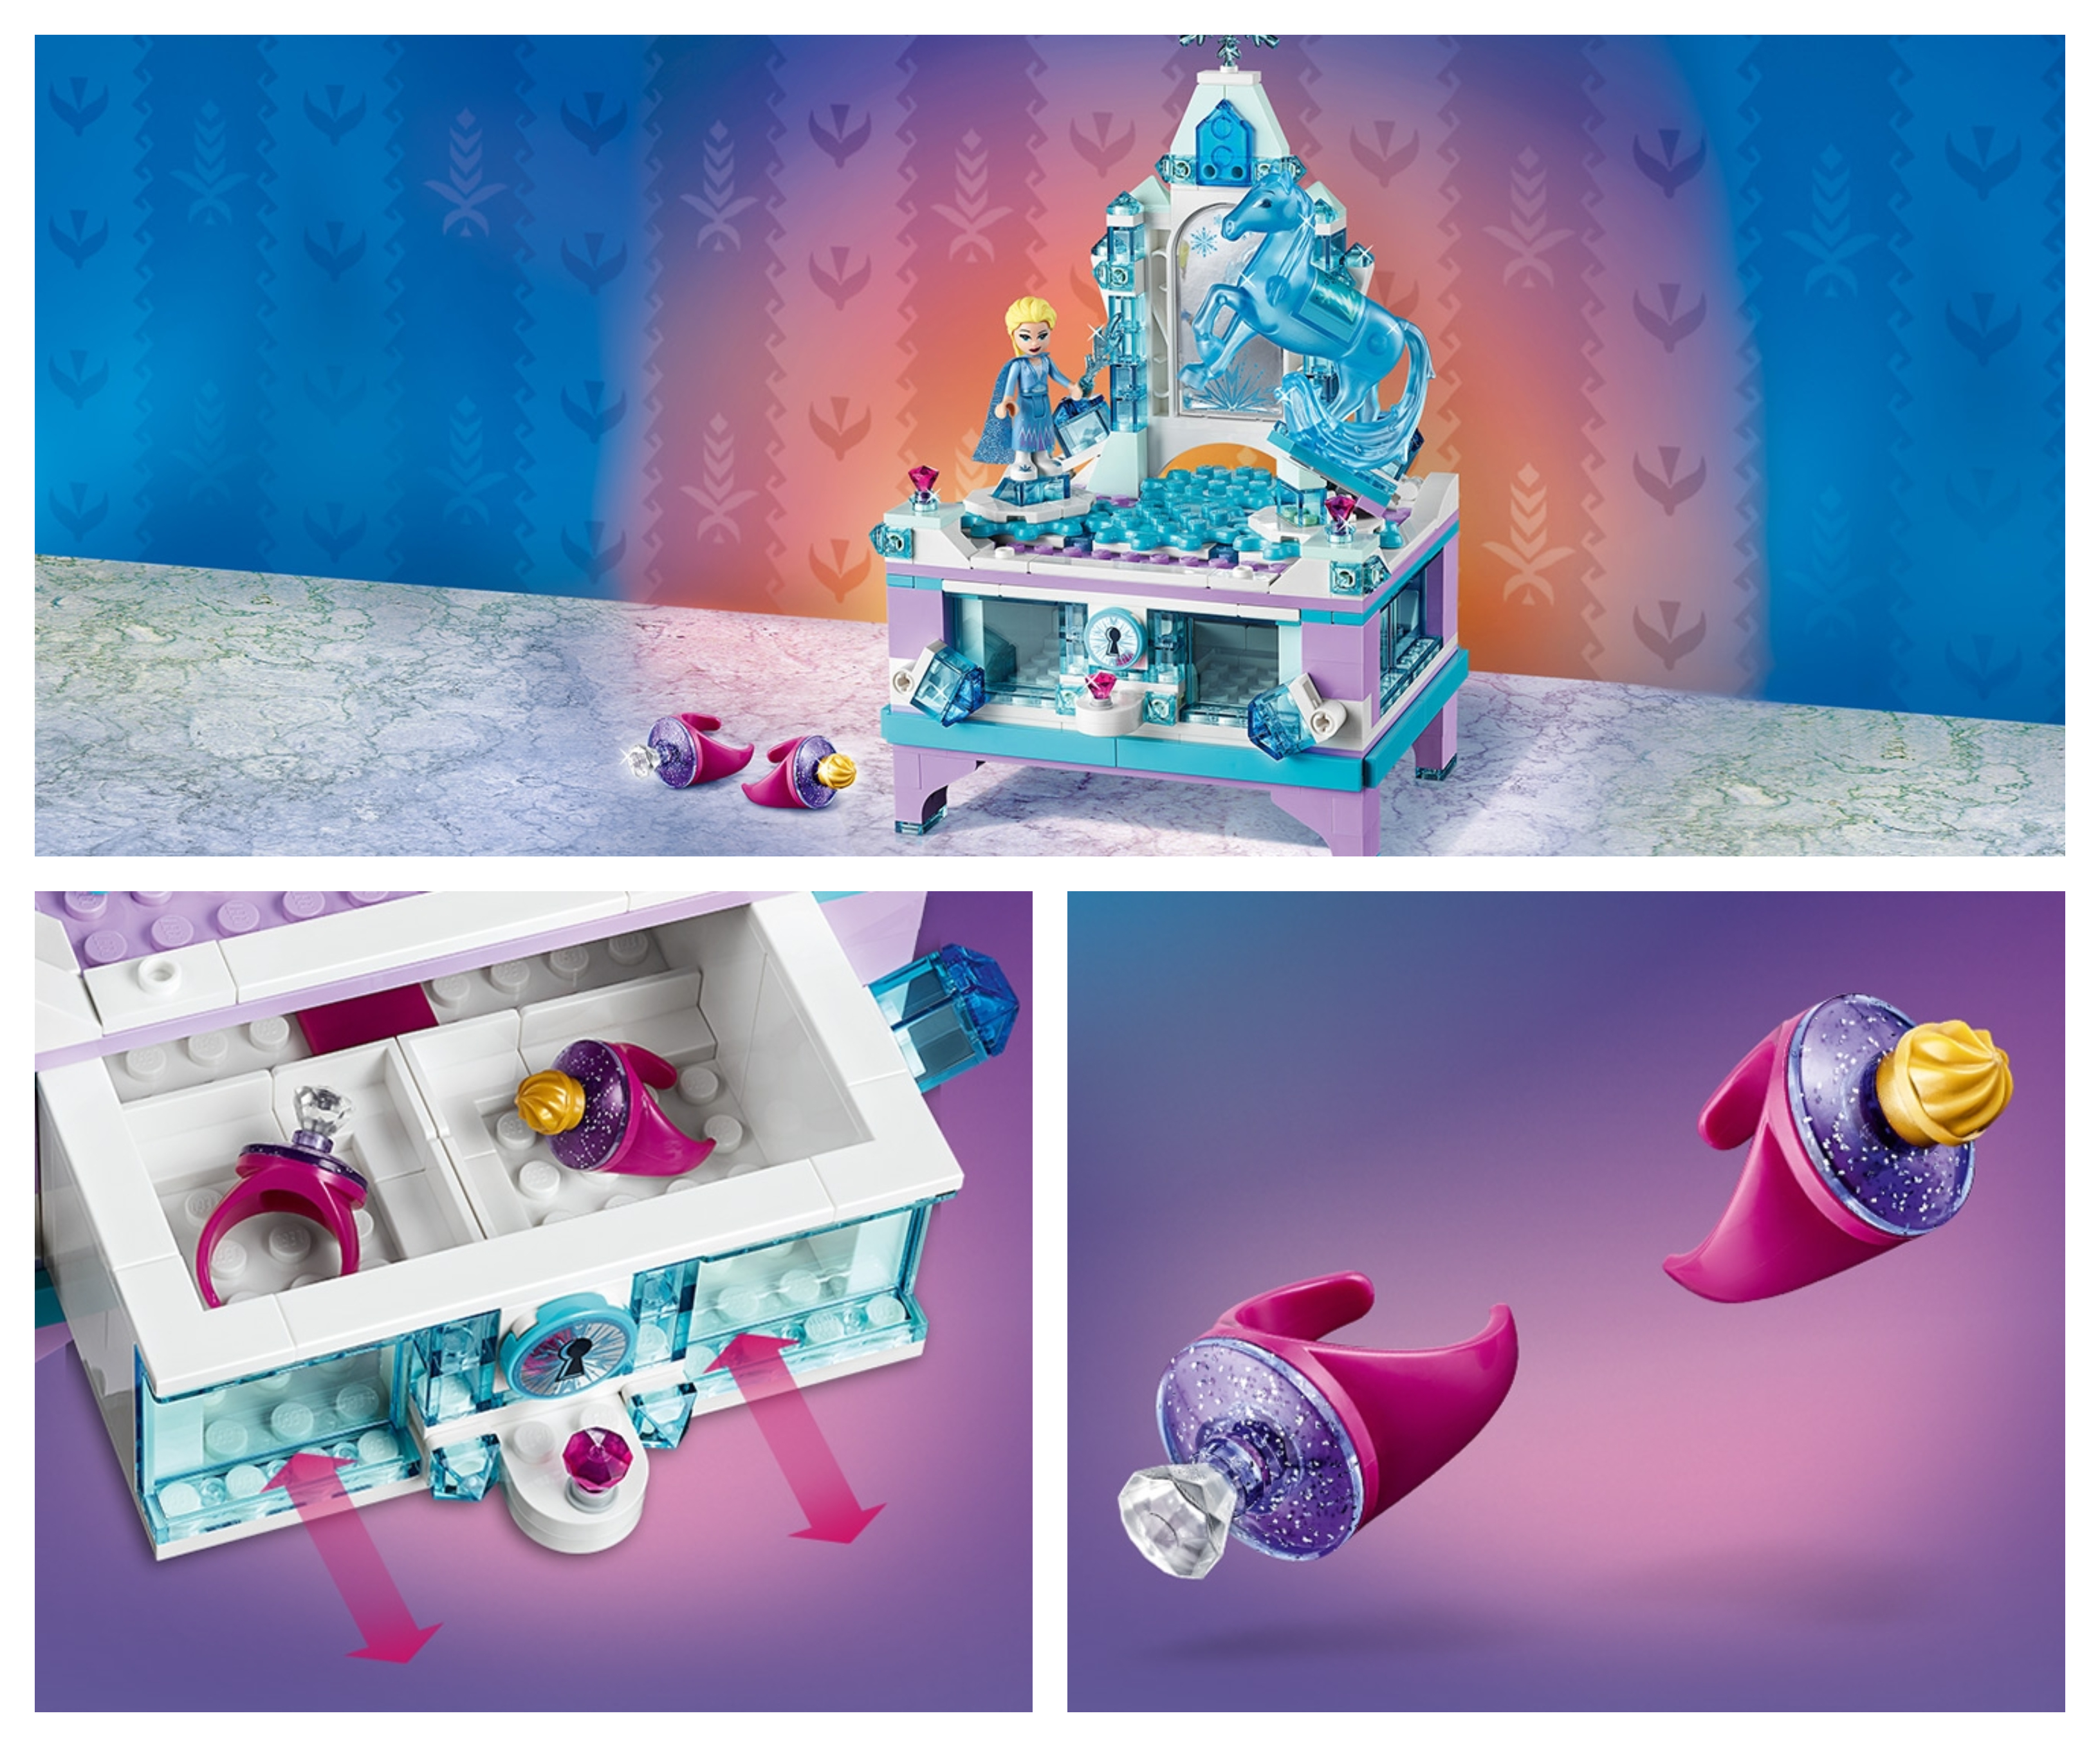 Šperkovnice LEGO Disney Elsa’s Jewelry Box Creation (41168) je dodávána se 2 prsteny a 2 miniaturními figurkami princezny Elsy a jejího koně Nokka.